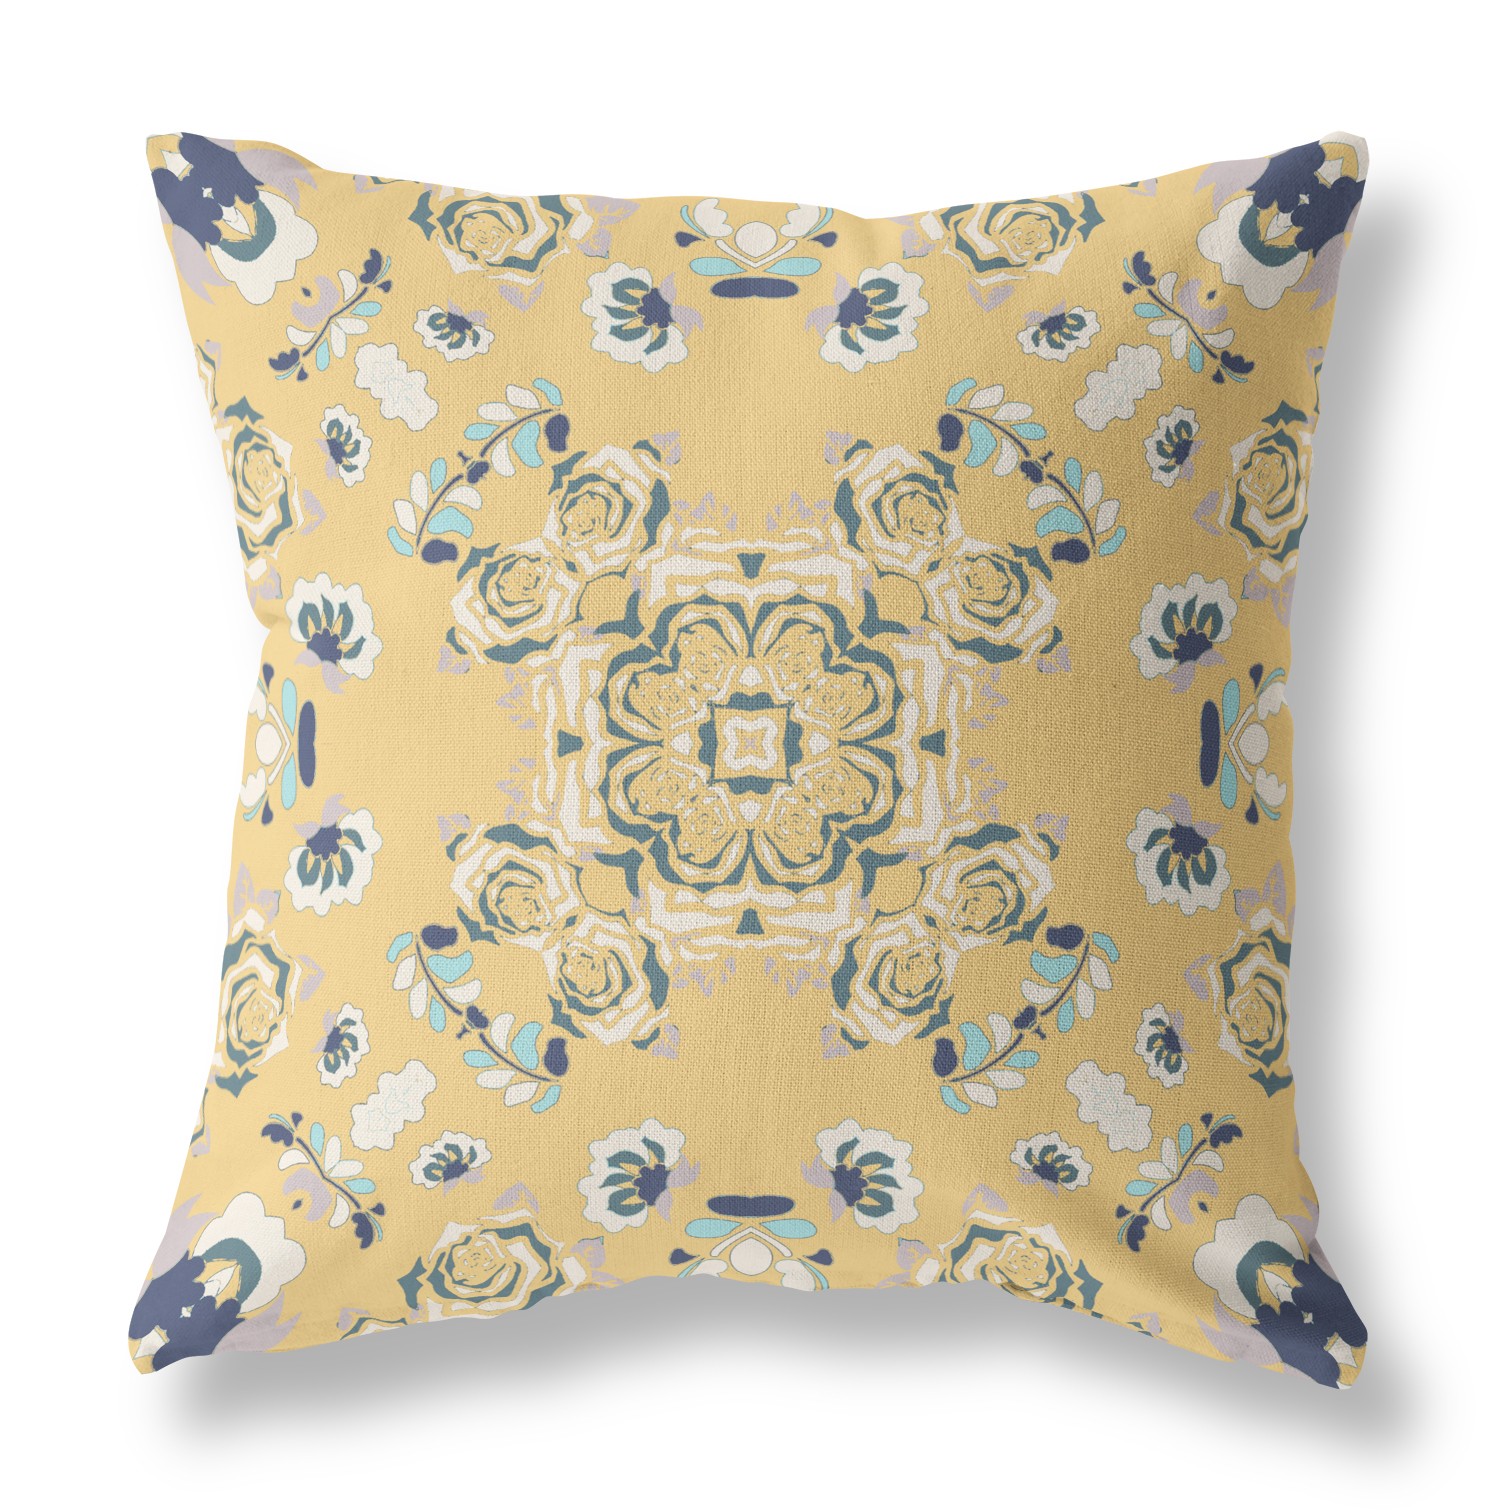 20” Yellow Navy Wreath Indoor Outdoor Zippered Throw Pillow-411252-1